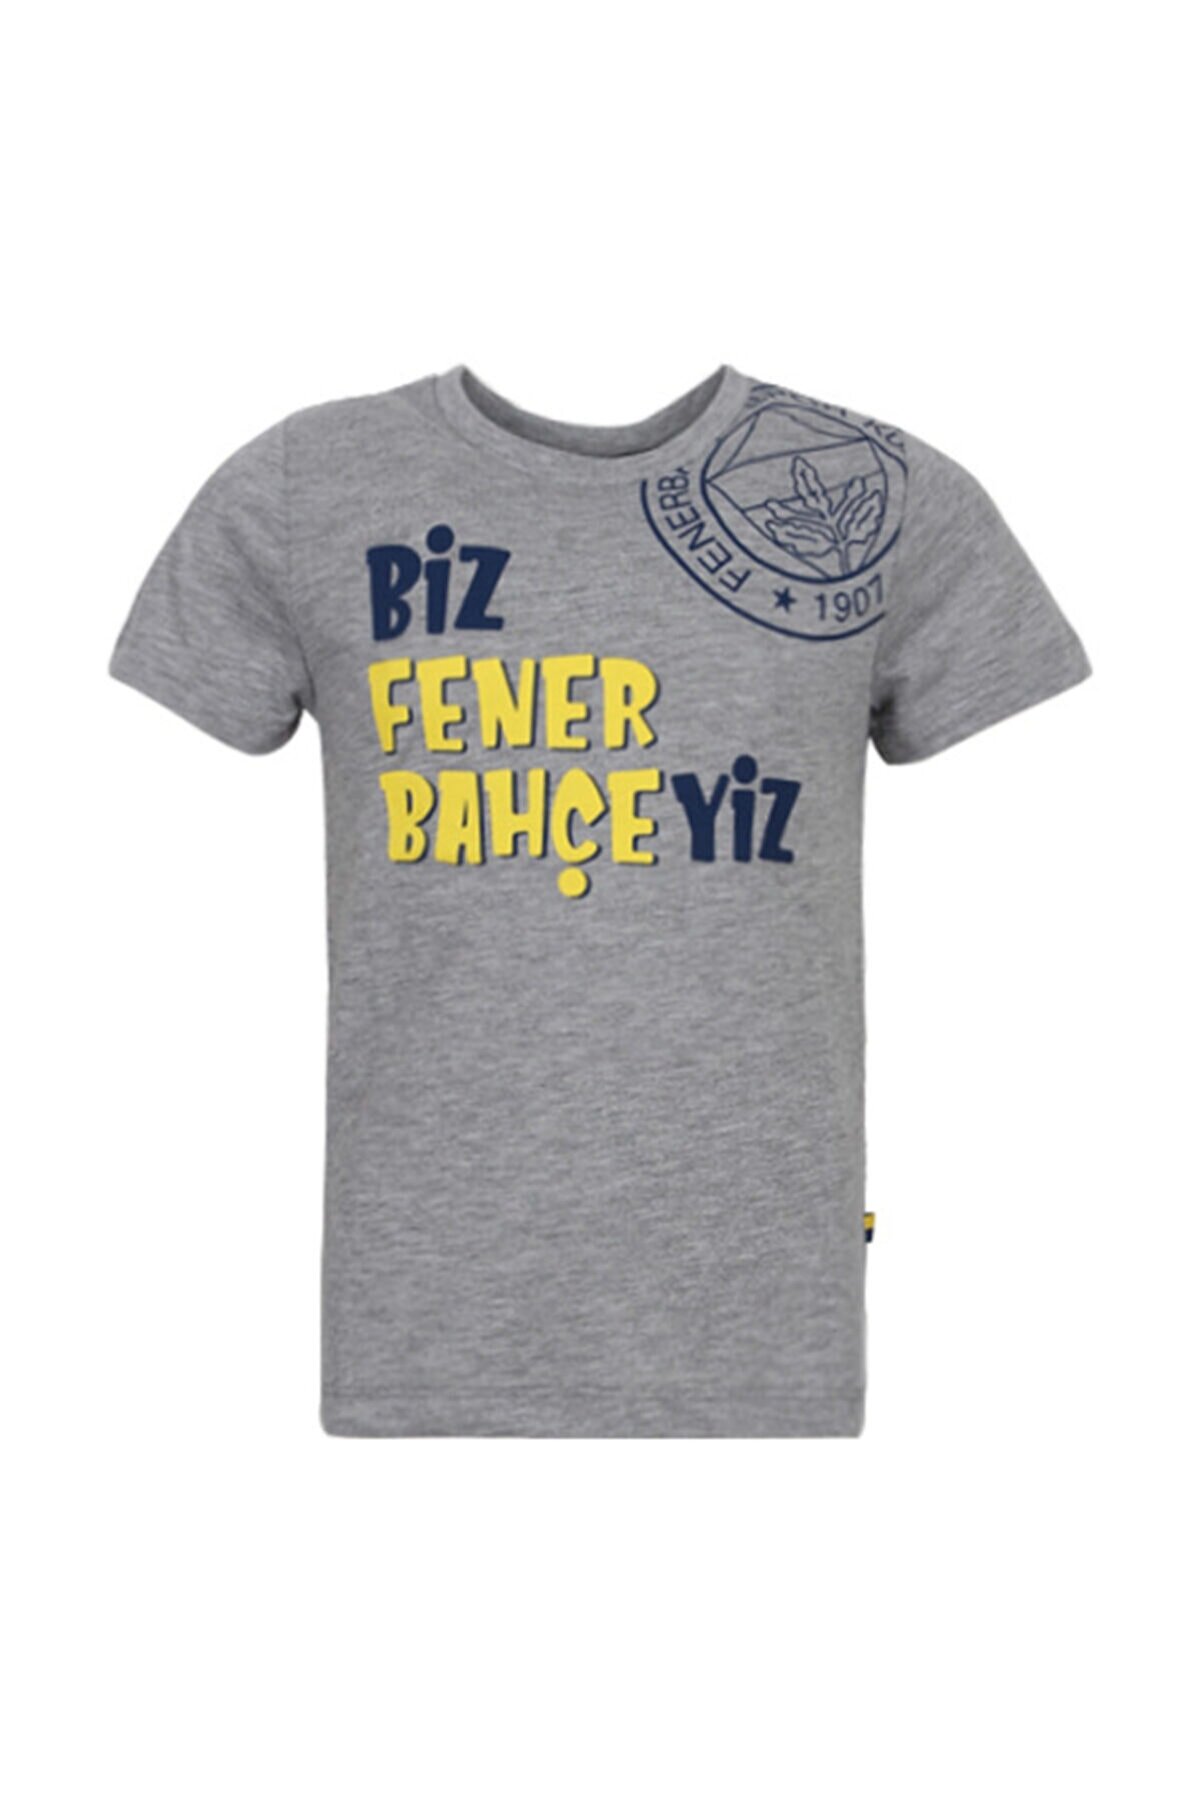 Fenerbahçe Unisex Çocuk Gri Trıbun Biz Fenerbahçeyiz Spor T-Shirt